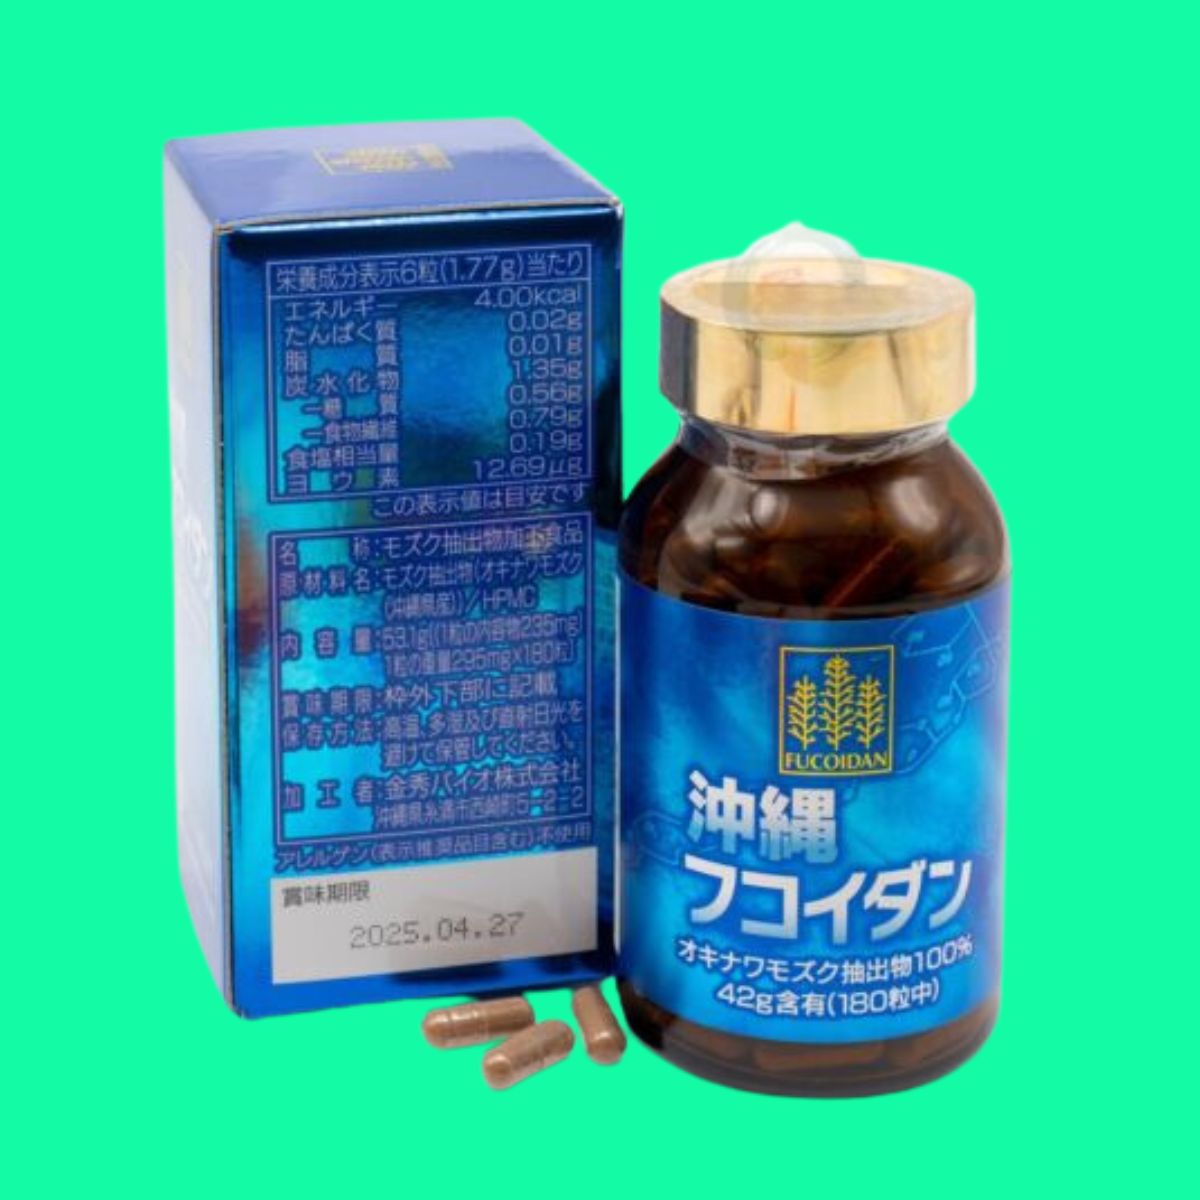 Thuốc Fucoidan Nhật Bản là thuốc gì? giá bao nhiêu? mua ở đâu?